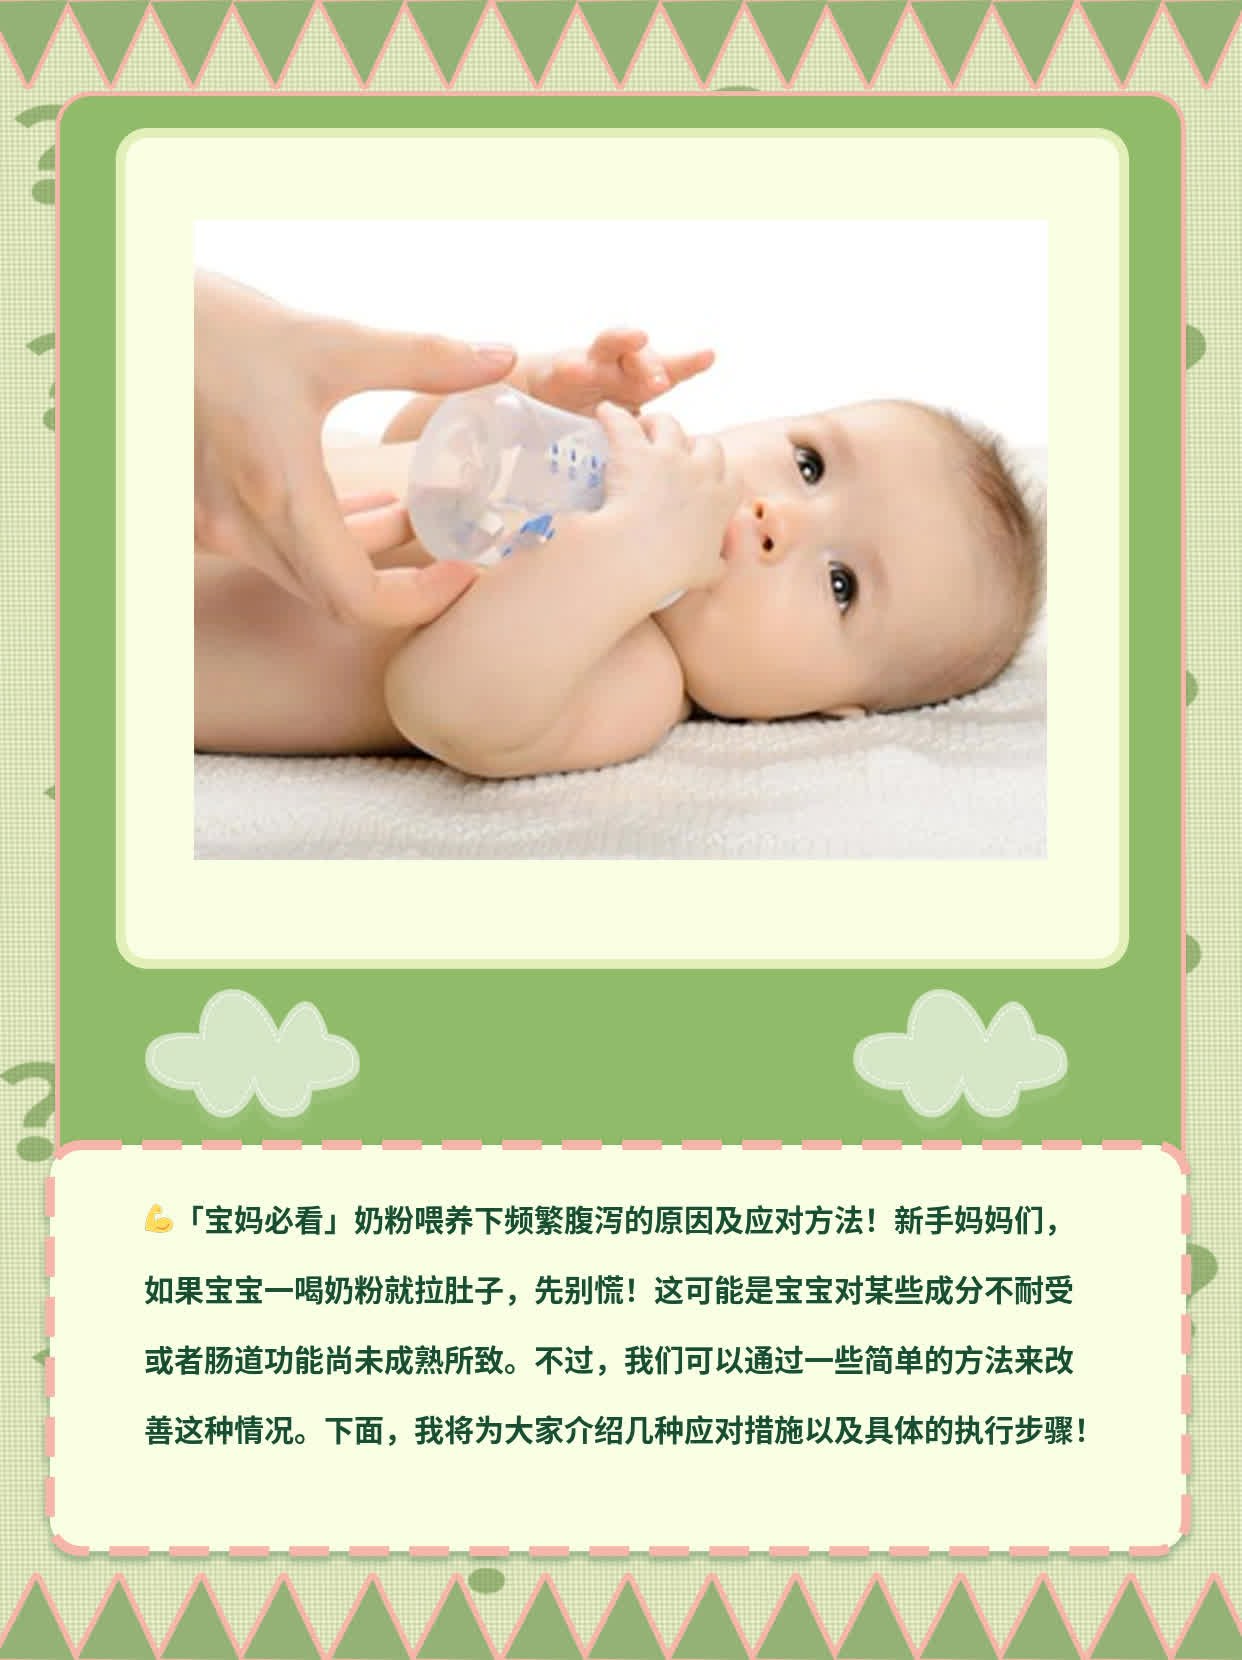 「宝妈必看」奶粉喂养下频繁腹泻的原因及应对方法